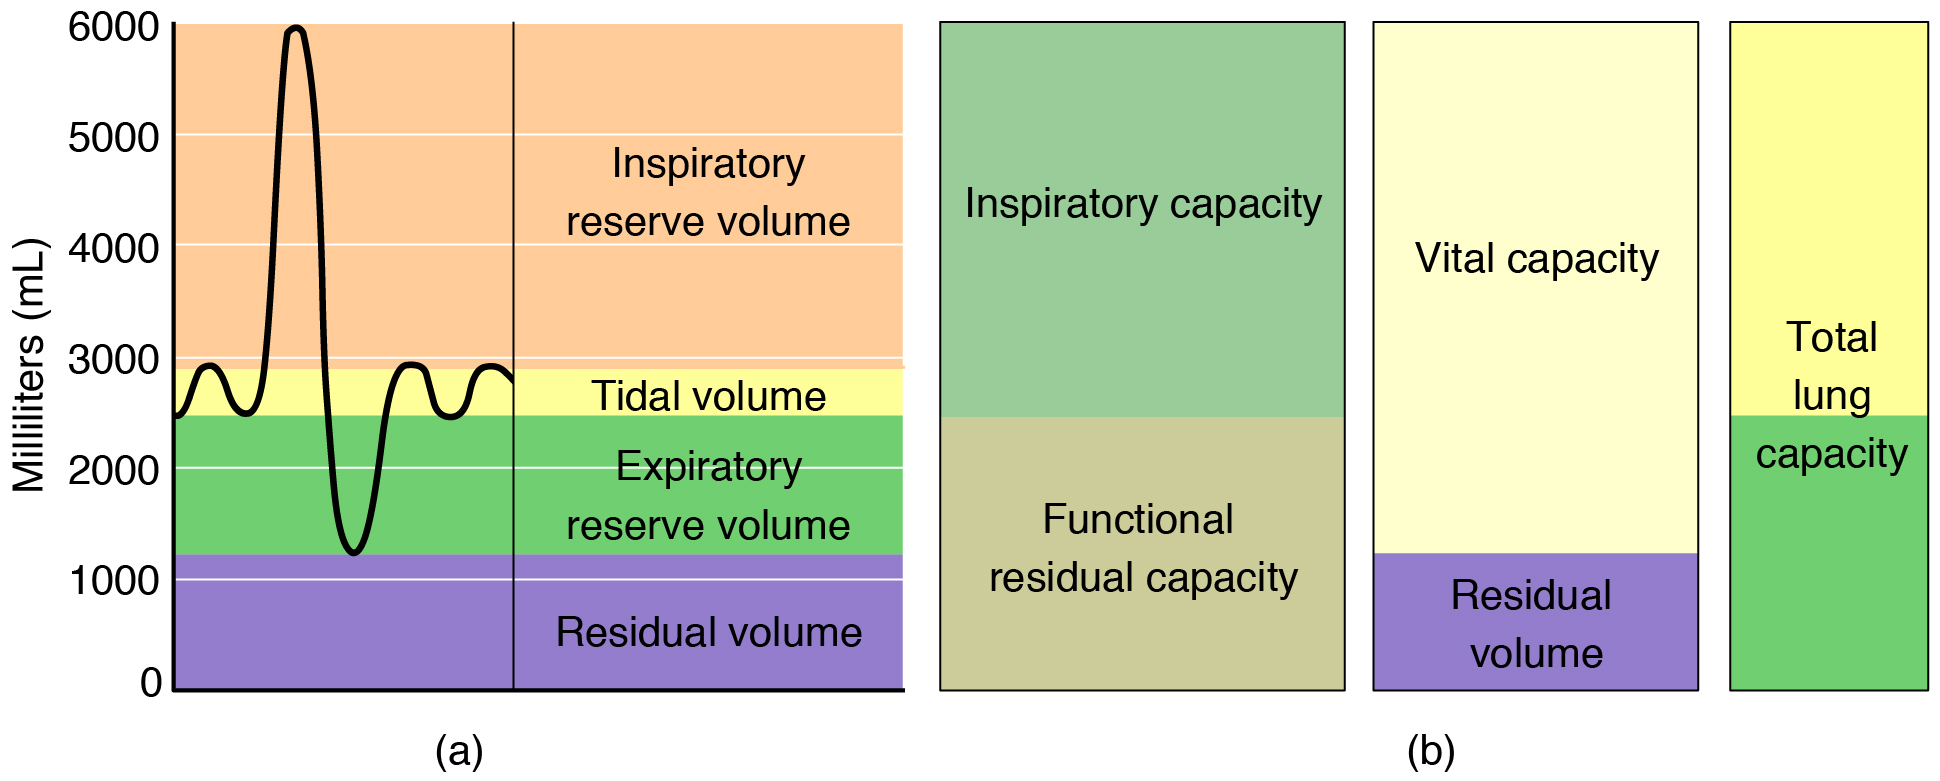 2317_Spirometry_and_Respiratory_Volumes.jpg